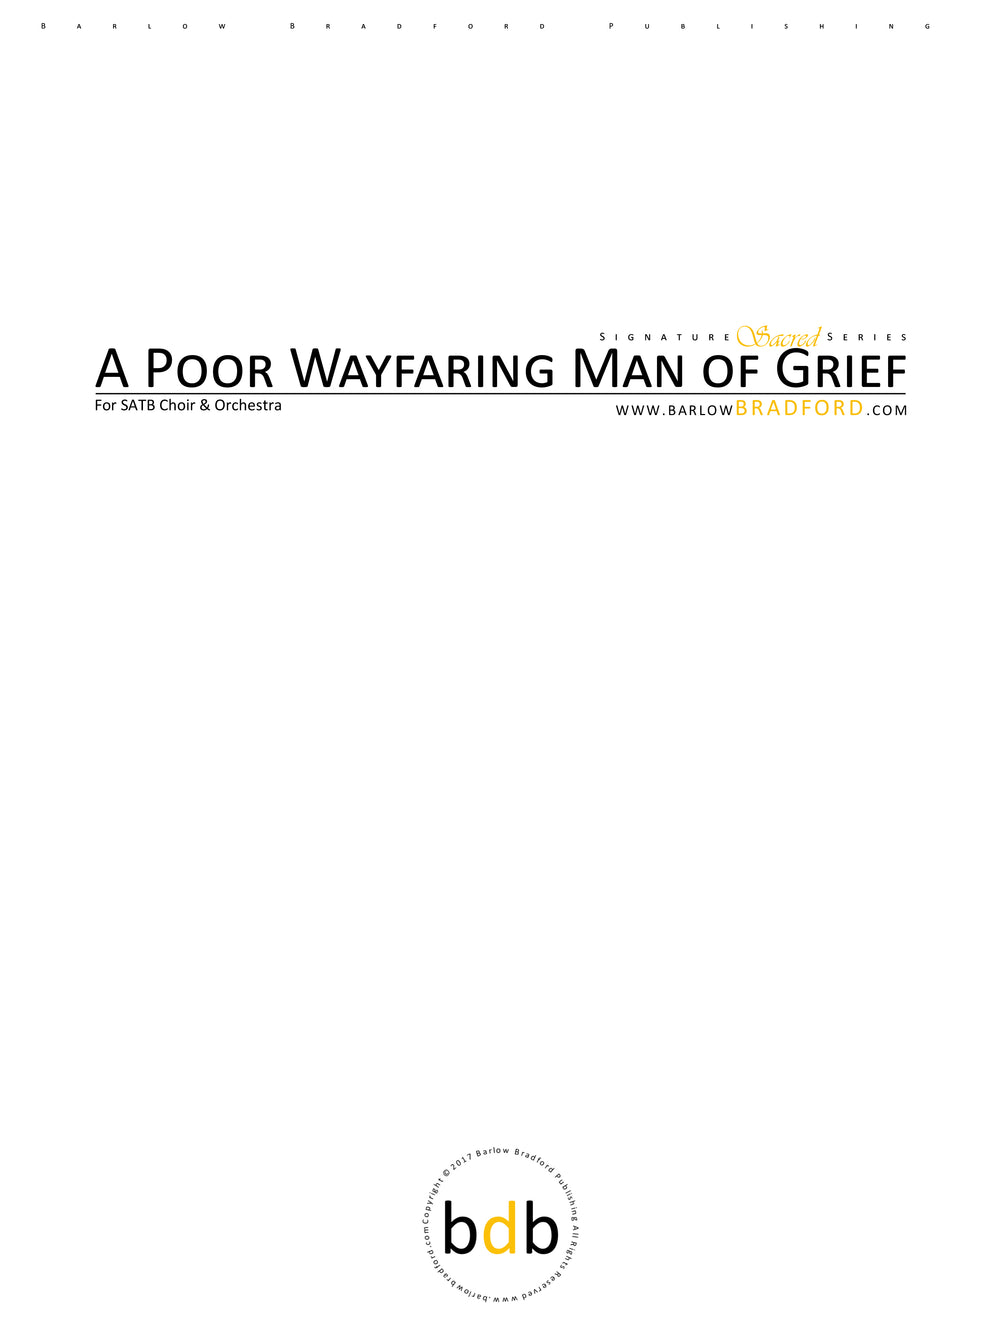 A Poor Wayfaring Man of Grief